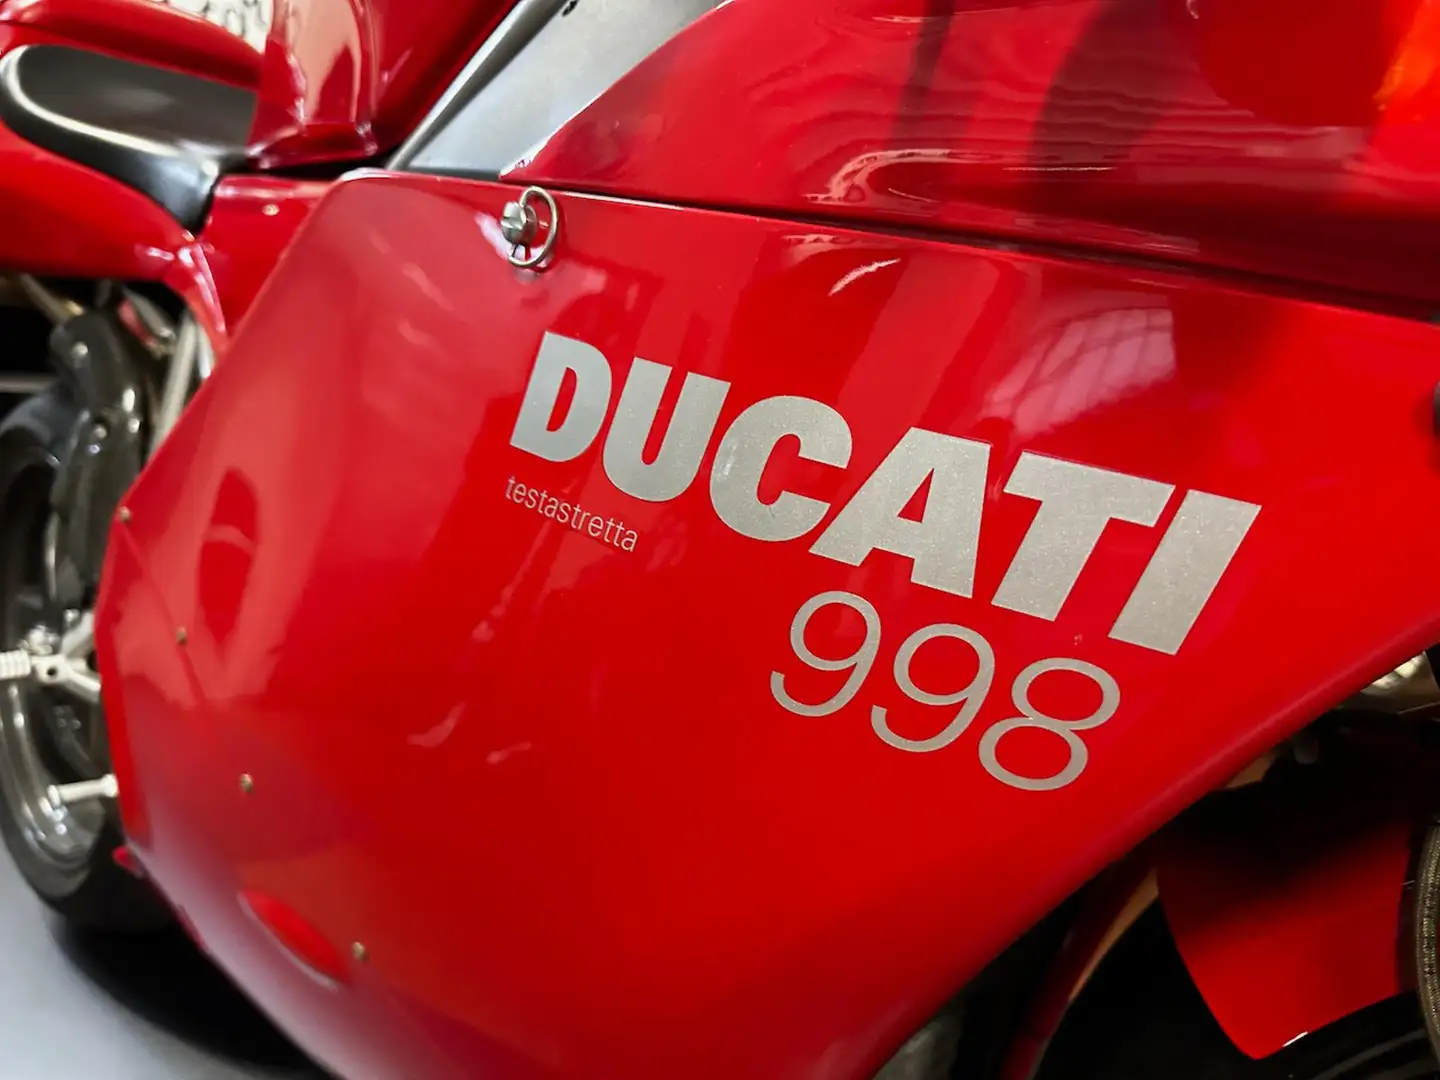 Ducati 998 ORIGINALE crvena - 2